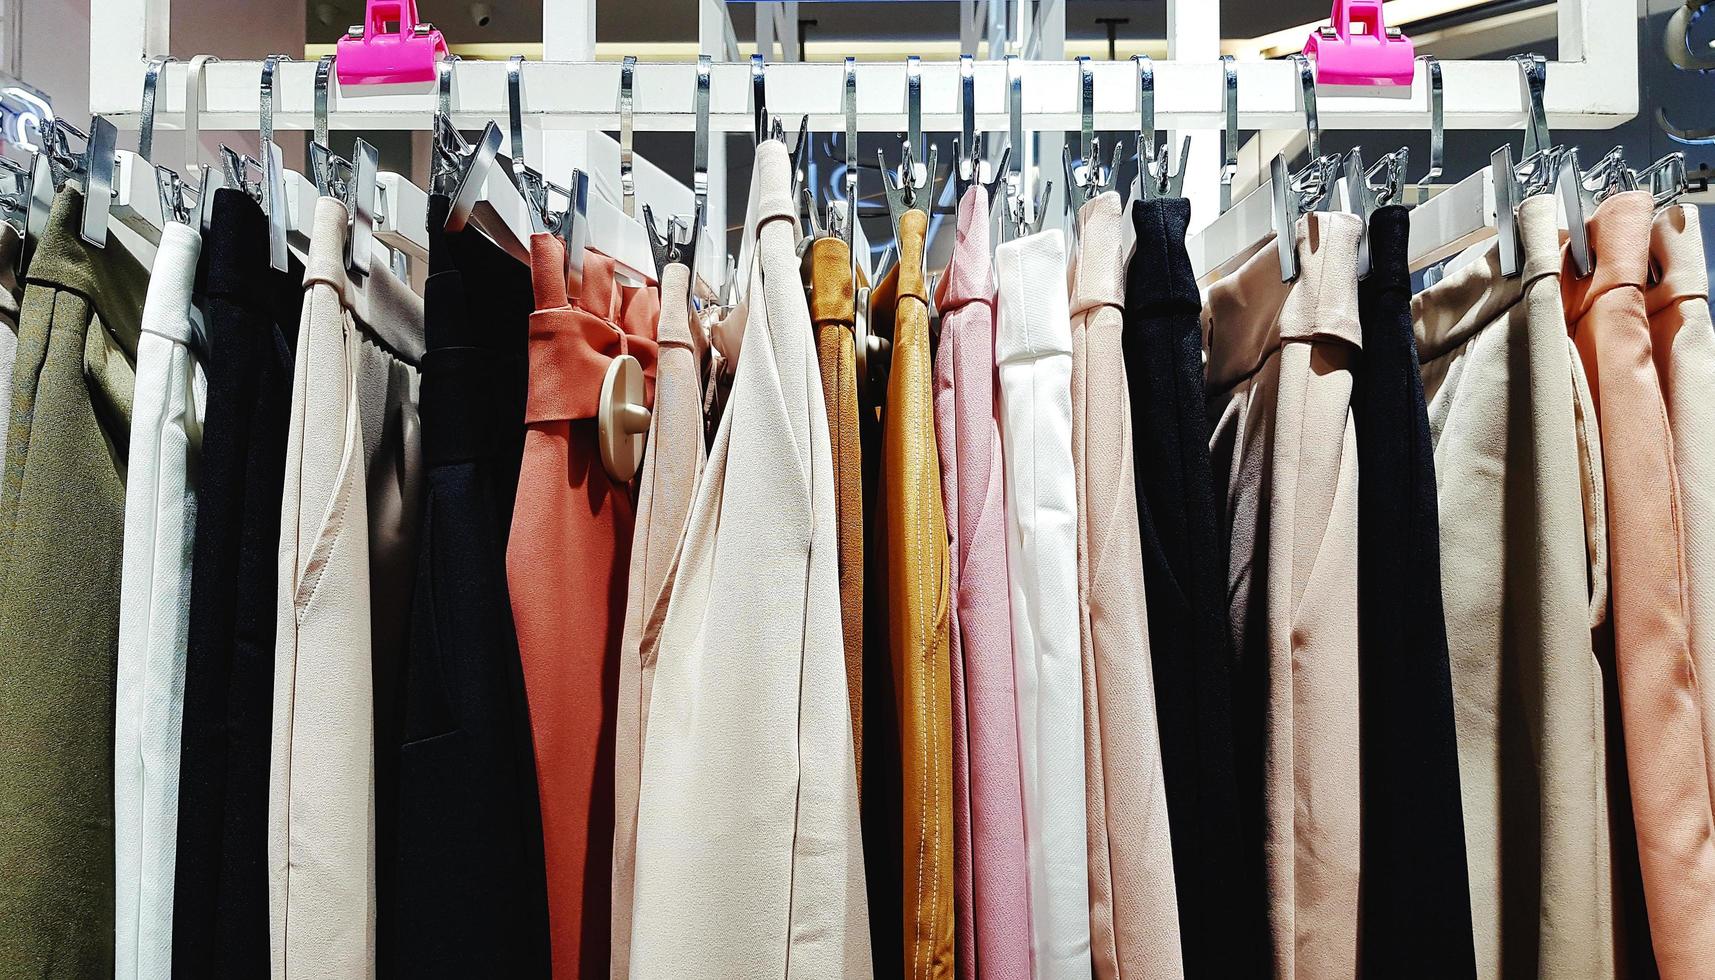 colorato di Da donna pantaloni sospeso su plastica grucce per vendita a moda memorizzare o donna Accessori negozio. cotone design. foto